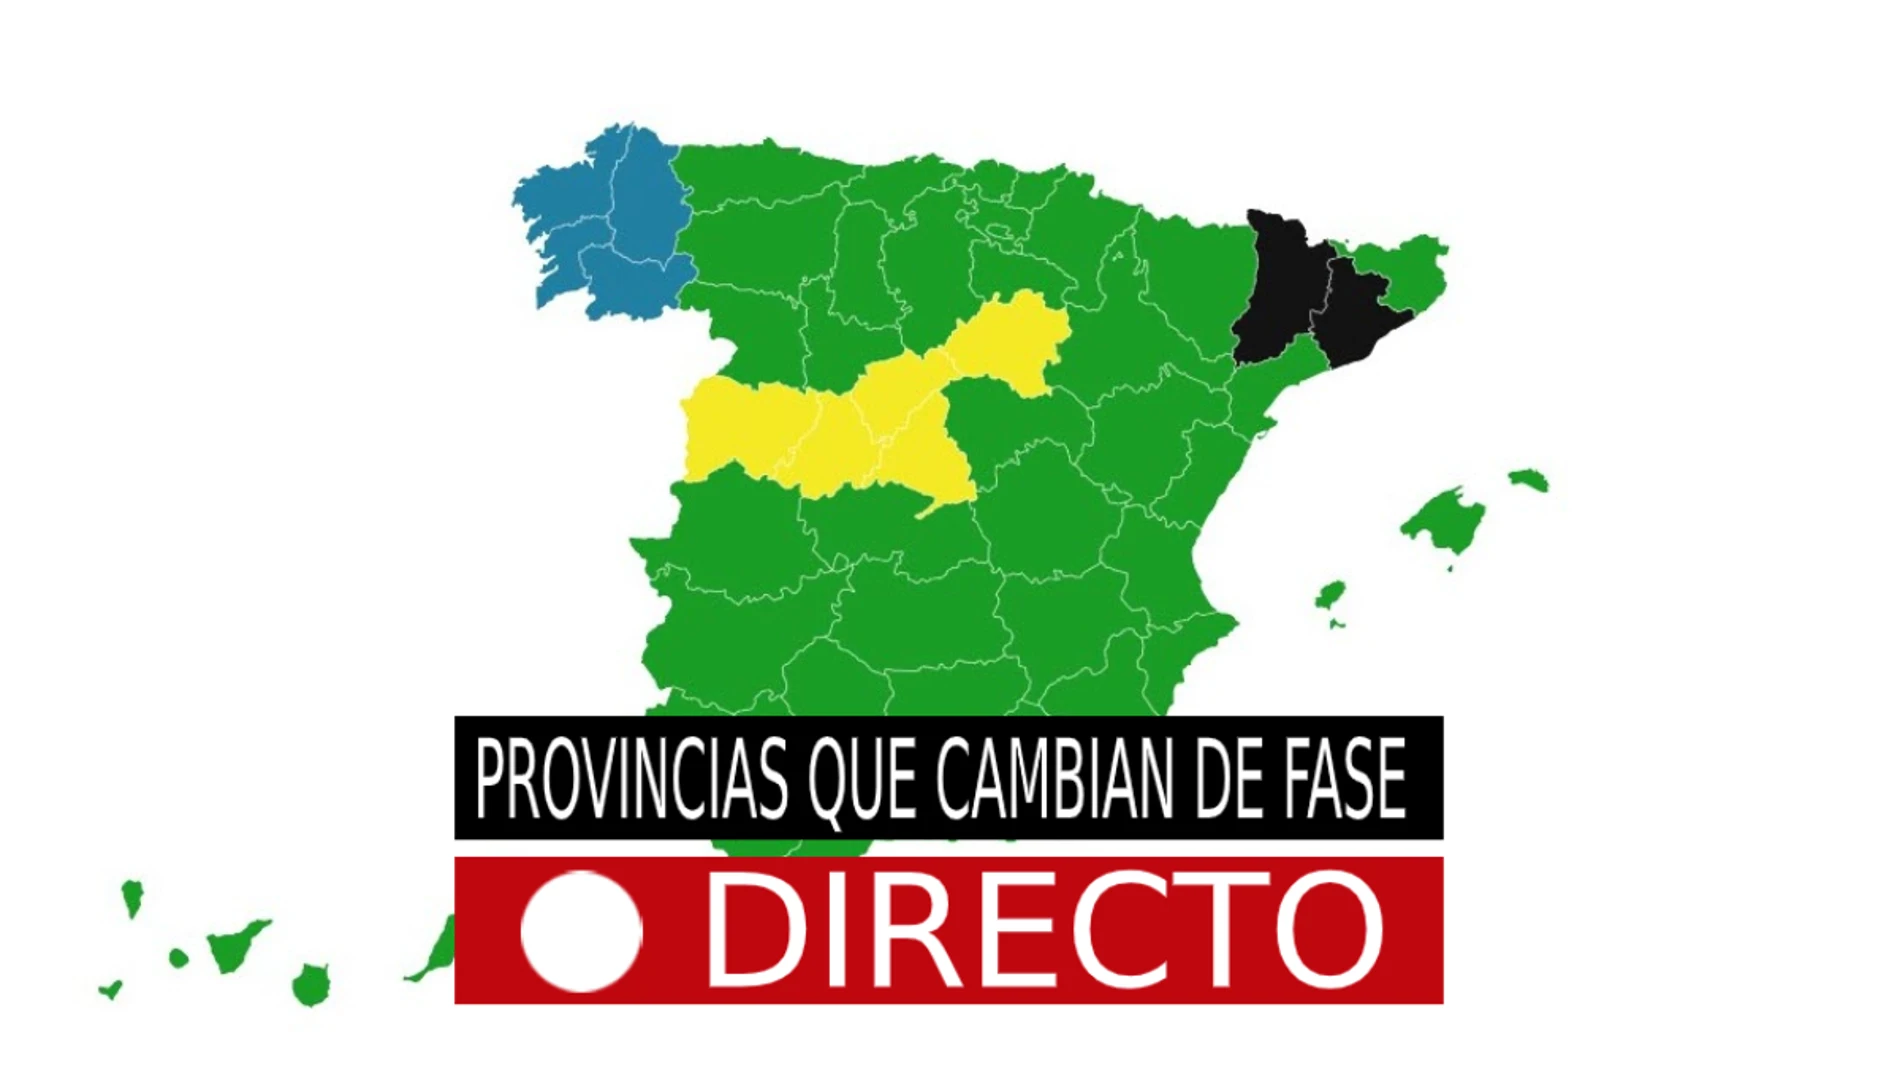 Provincias que cambian de fase por la desescalada del Coronavirus en España hoy, última hora, en directo